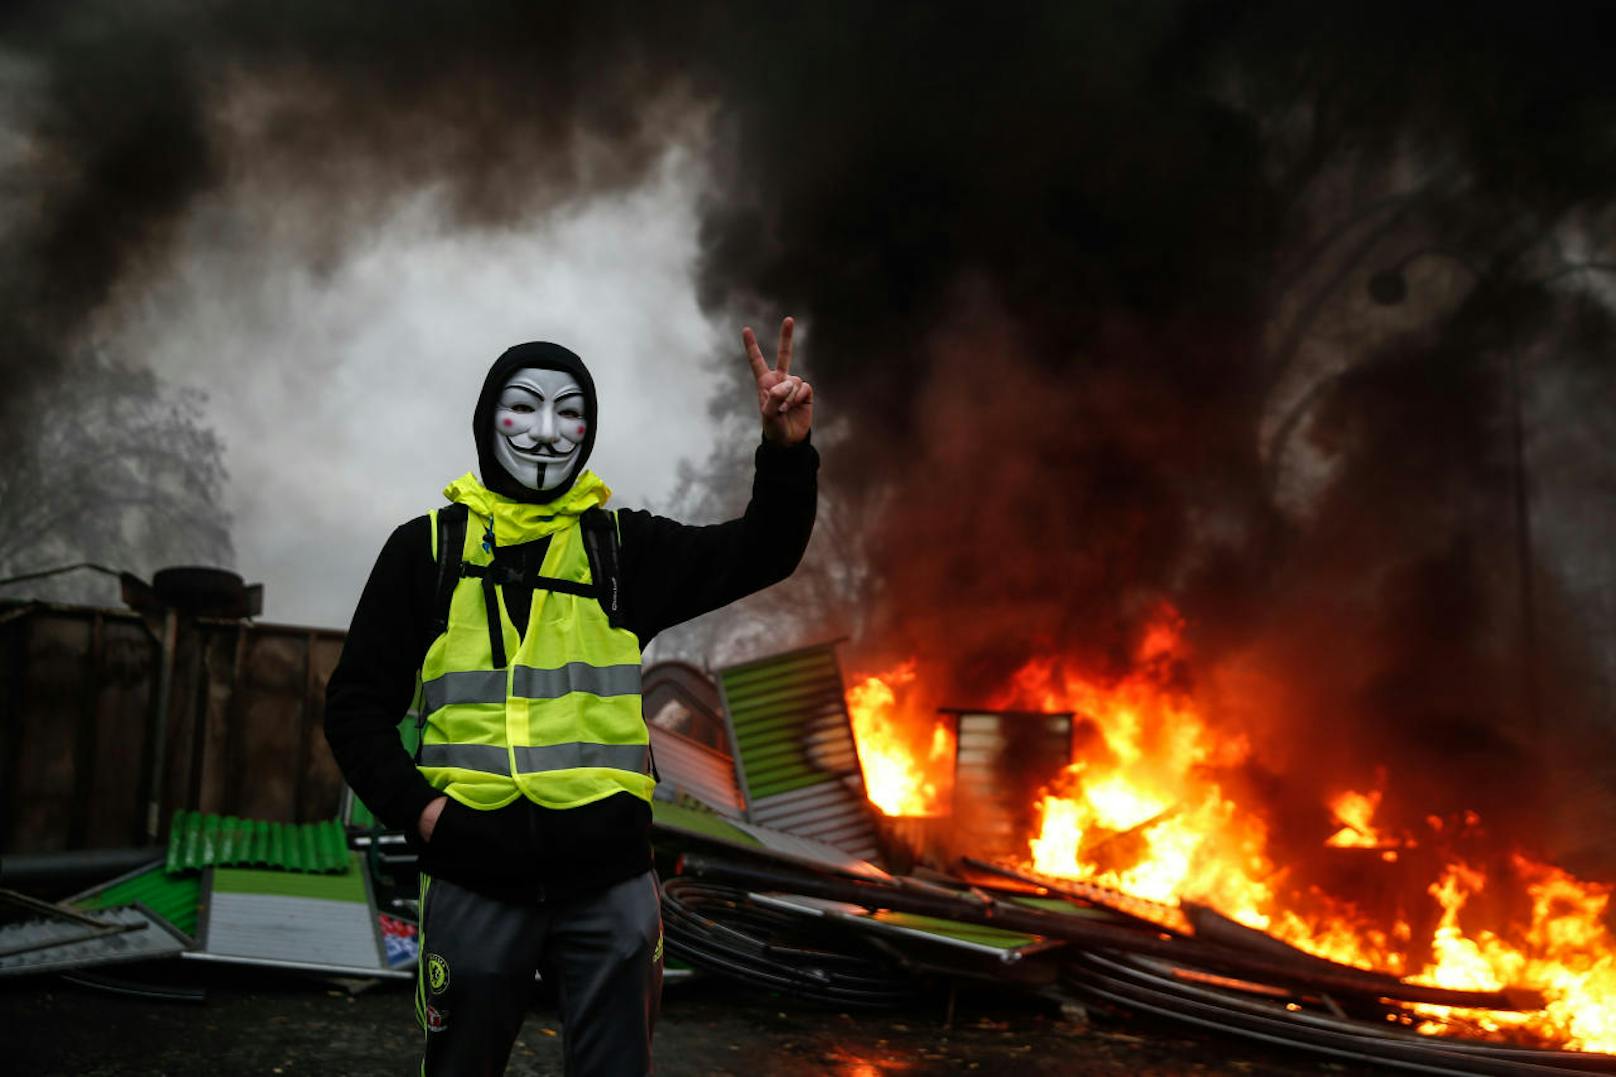 Beim erneuten Protestaufmarsch der regieurngskritischen "Gelbwesten" (Gilets jaunes) in Paris kam es zu Ausschreitungen. 133 Menschen wurden verletzt, rund 400 Personen wurden festgenommen. 